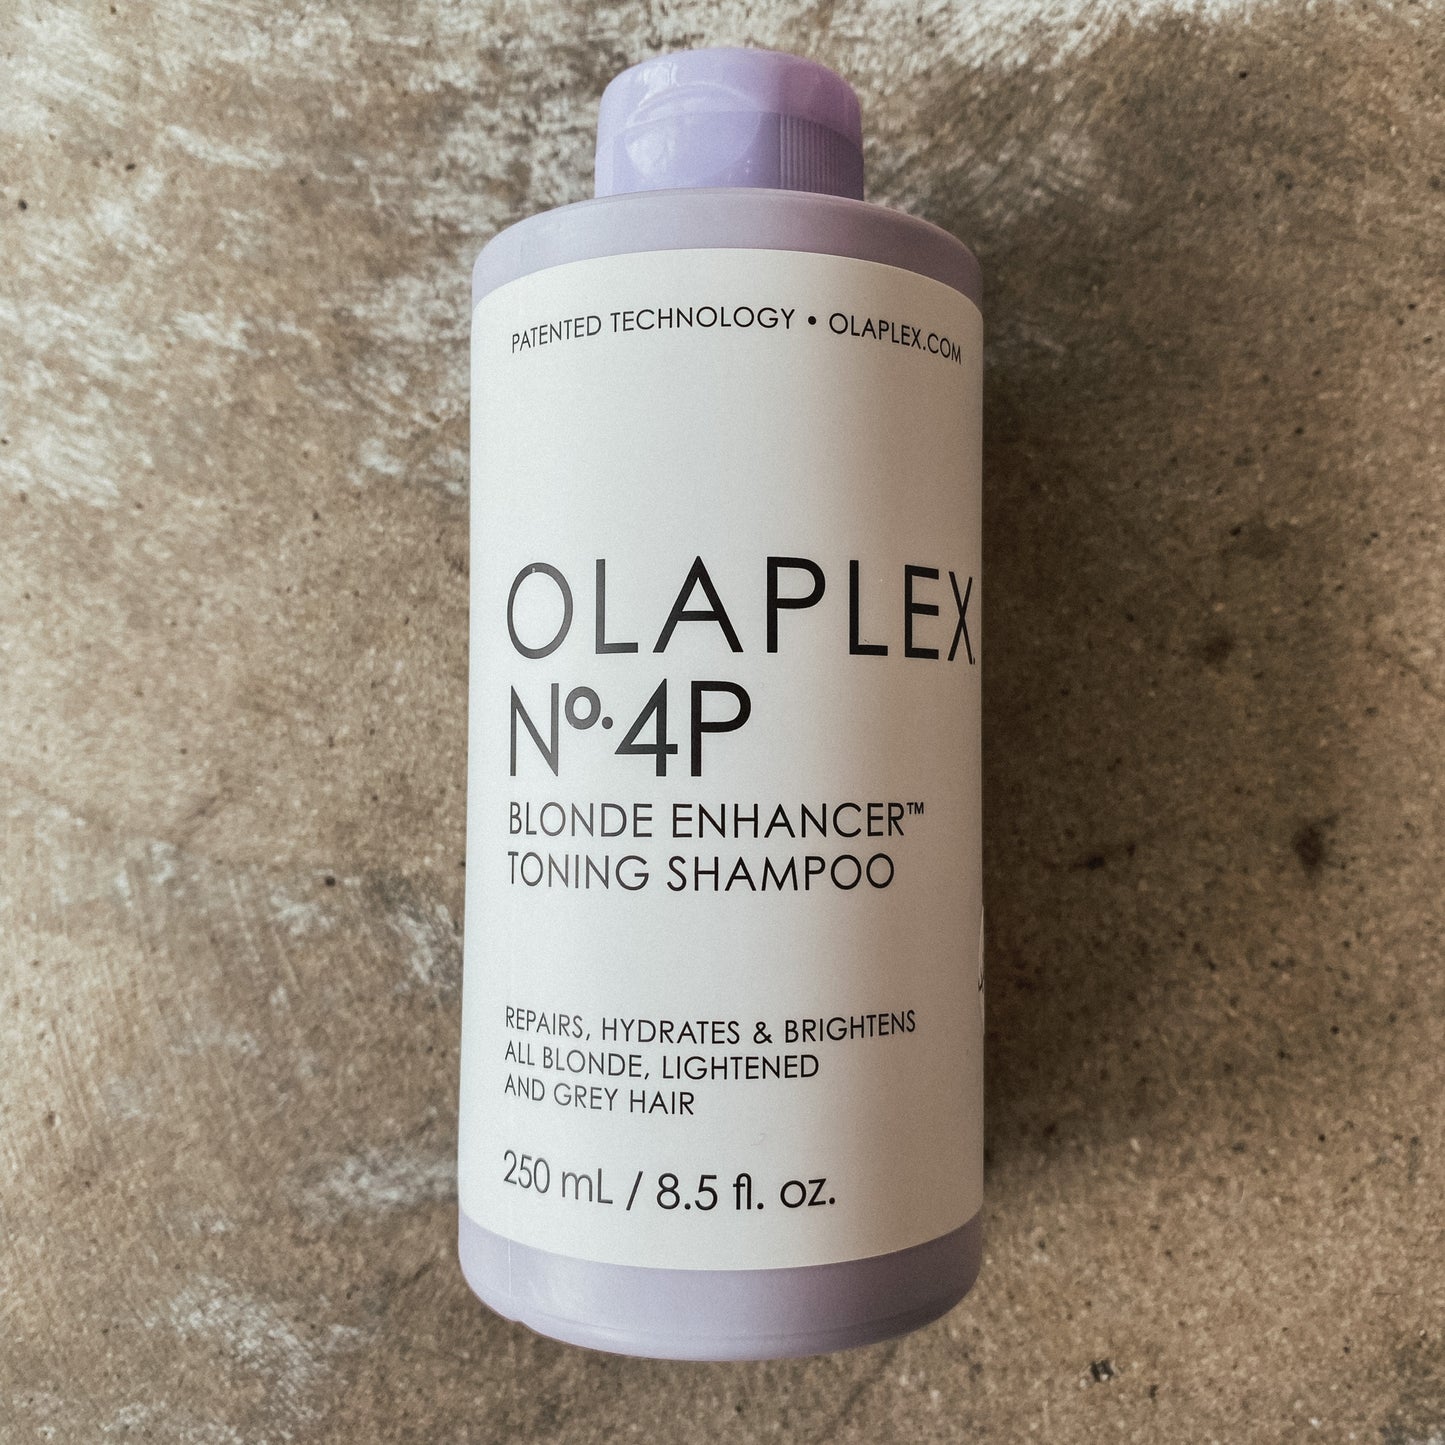 Olaplex No.4p